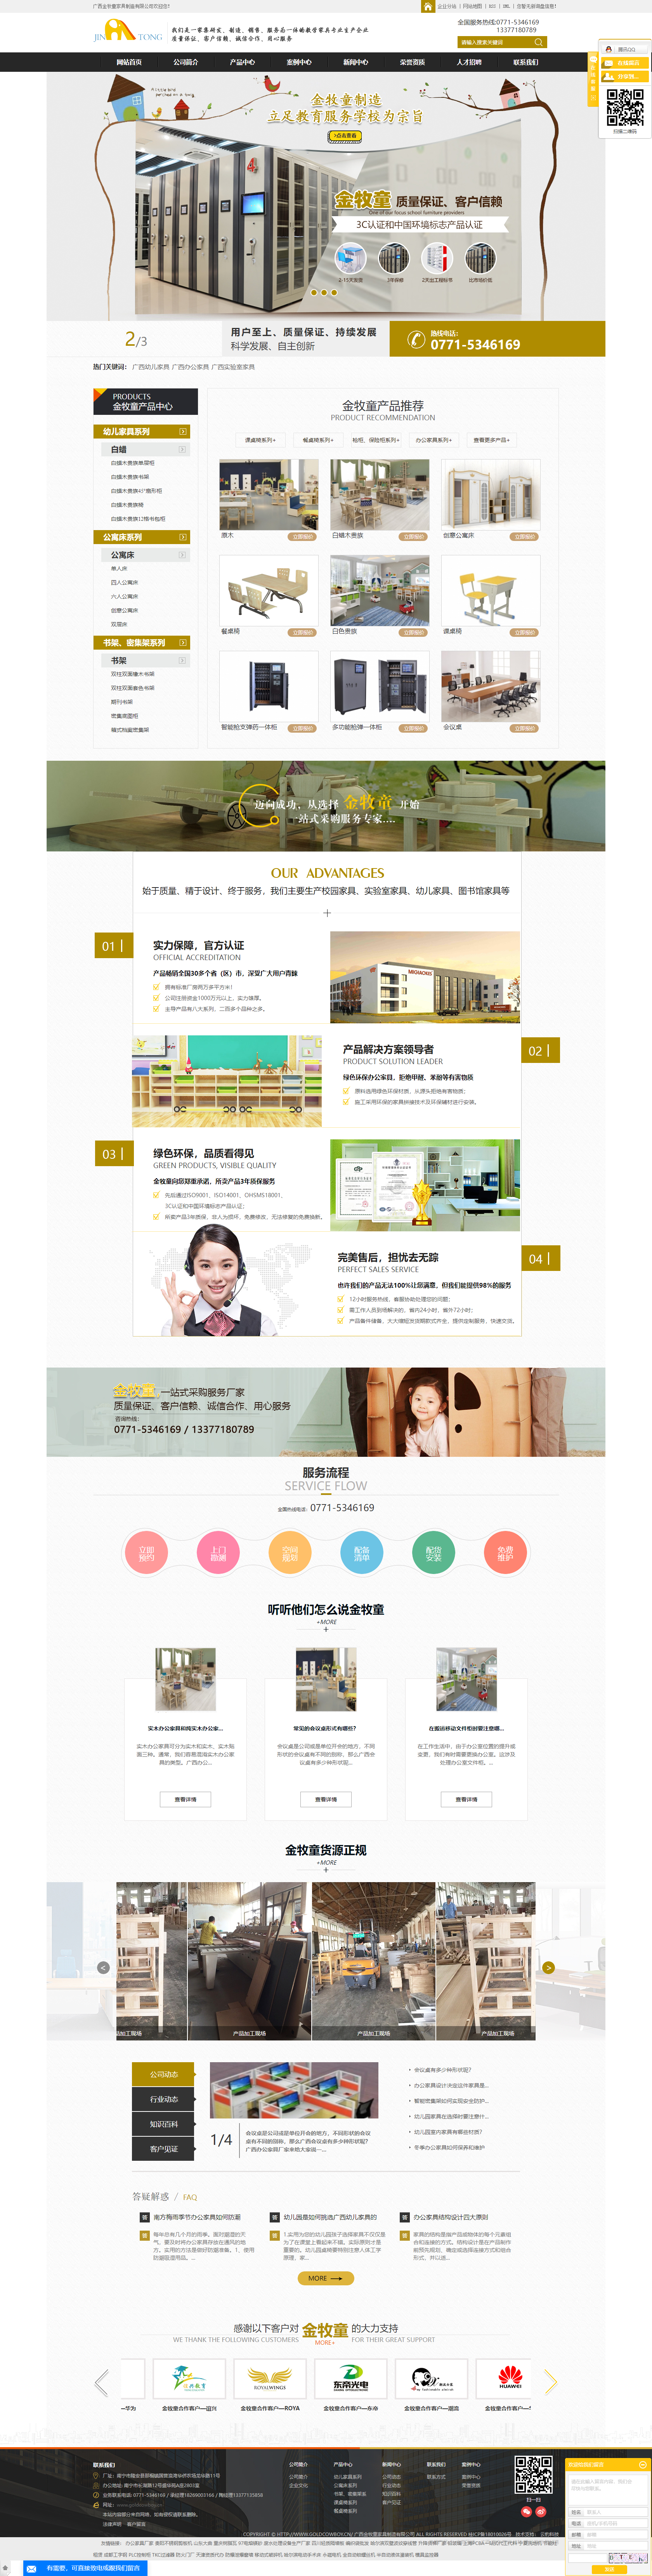 广西金牧童家具制造有限公司网站案例